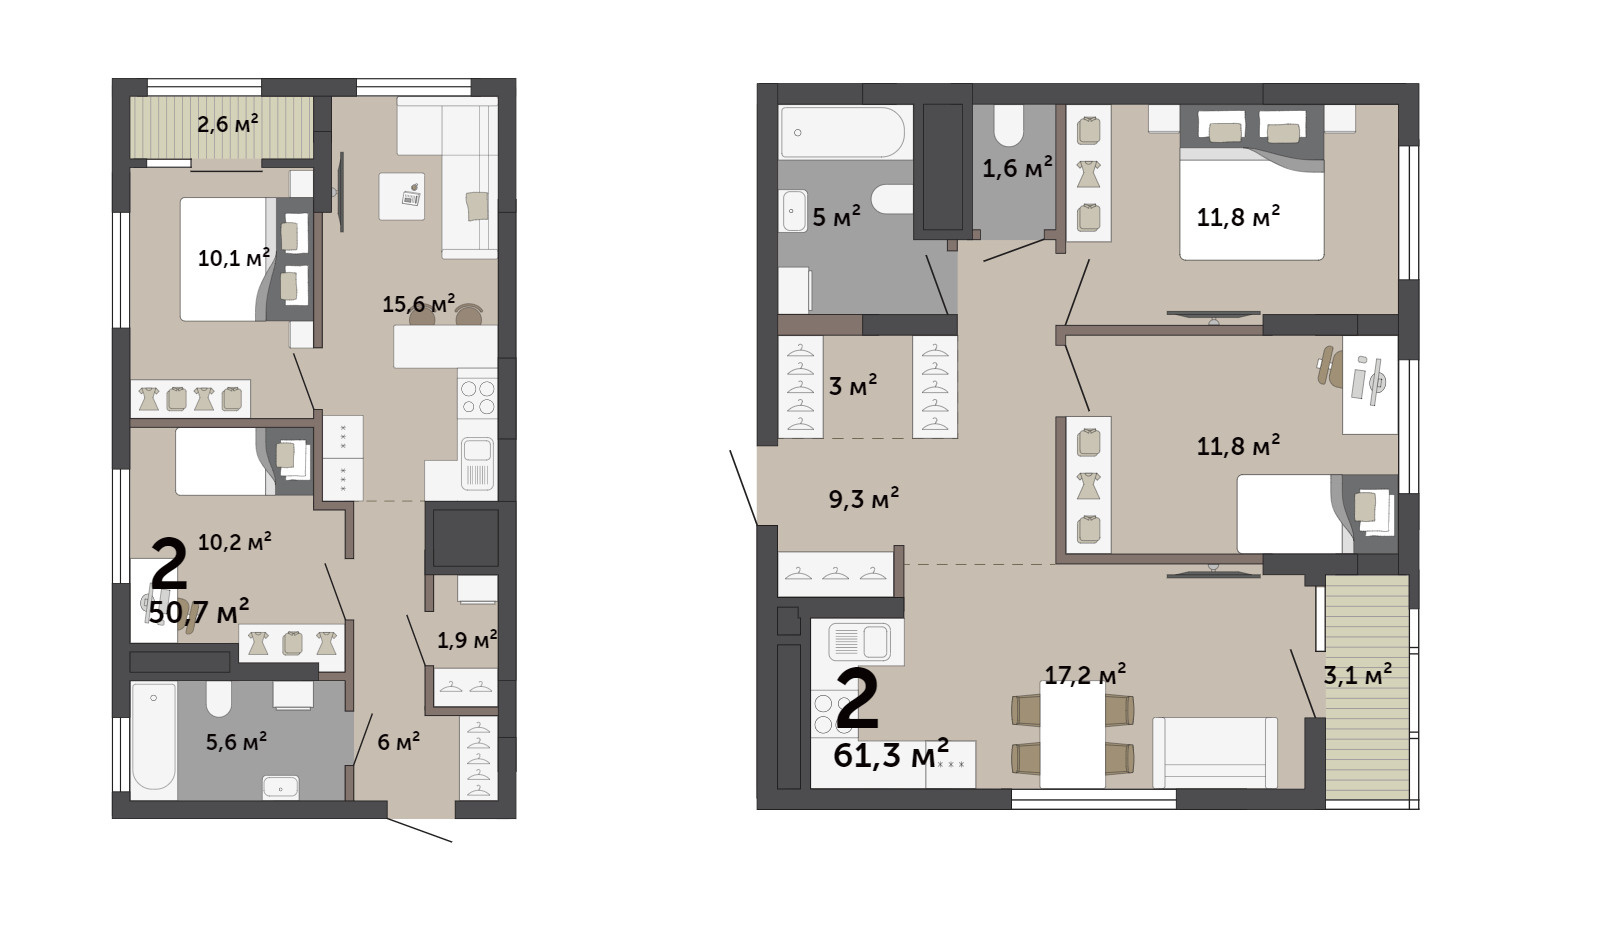 Можно выбрать просторный или компактный вариант среди квартир с одинаковым количеством спален. Здесь комнаты две, но разница в площади жилья более 10 <nobr class="_">кв. м</nobr>